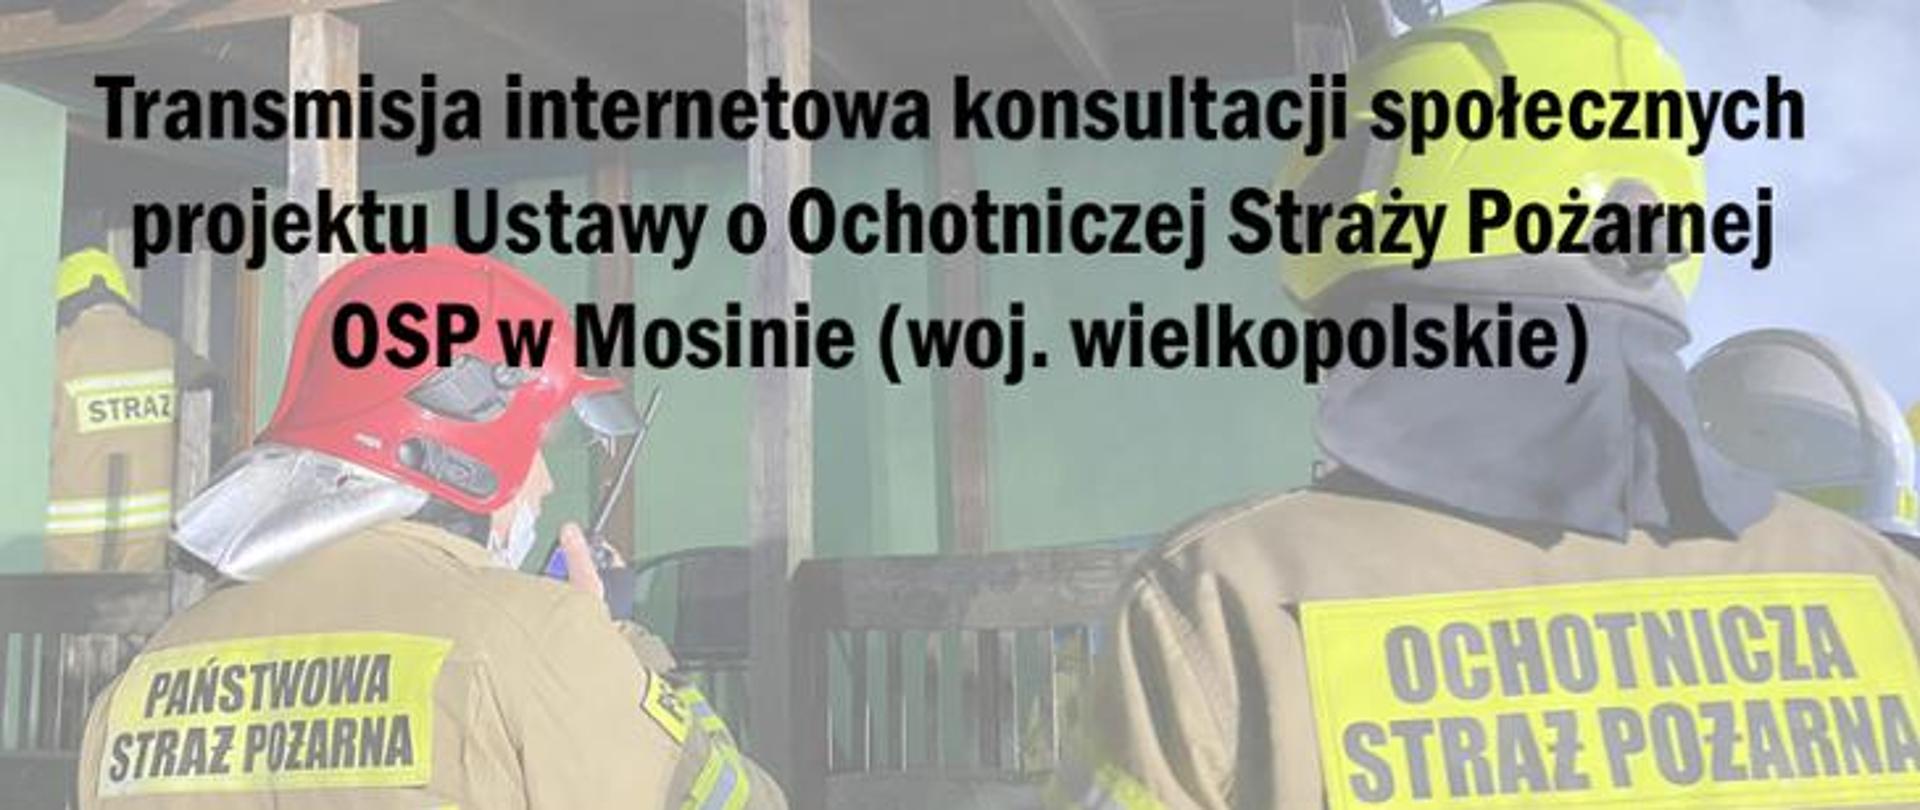 Zdjęcie przedstawia strażaków OSP i PSP w czasie działań ratowniczych. Na pierwszym planie zdjęcia znajdują się strażacy - jeden z PSP i dwóch strażaków OSP. Strażak z PSP nadaje informacje przez radiostację, ma czerwony hełm, ubranie specjalne z napisem Państwowa Straż Pożarna. Straży OSP posiadają również ubranie specjalne z napisem Ochotnicza Straż Pożarna oraz hełmy - jeden z nich w kolorze żółtym, a drugi w kolorze białym. W dalszym planie zdjęcia widać budynek oraz taras prowadzący do drzwi budynku. W drzwiach znajduje się kolejny strażak OSP, również w ubraniu specjalnym z napisem Straż oraz żółtym hełmie. Na zdjęciu jest napis koloru czarnego: Transmisja internetowa konsultacji społecznych projektu Ustawy o Ochotniczej Straży Pożarnej OSP w Mosinie (woj. wielkopolskie).